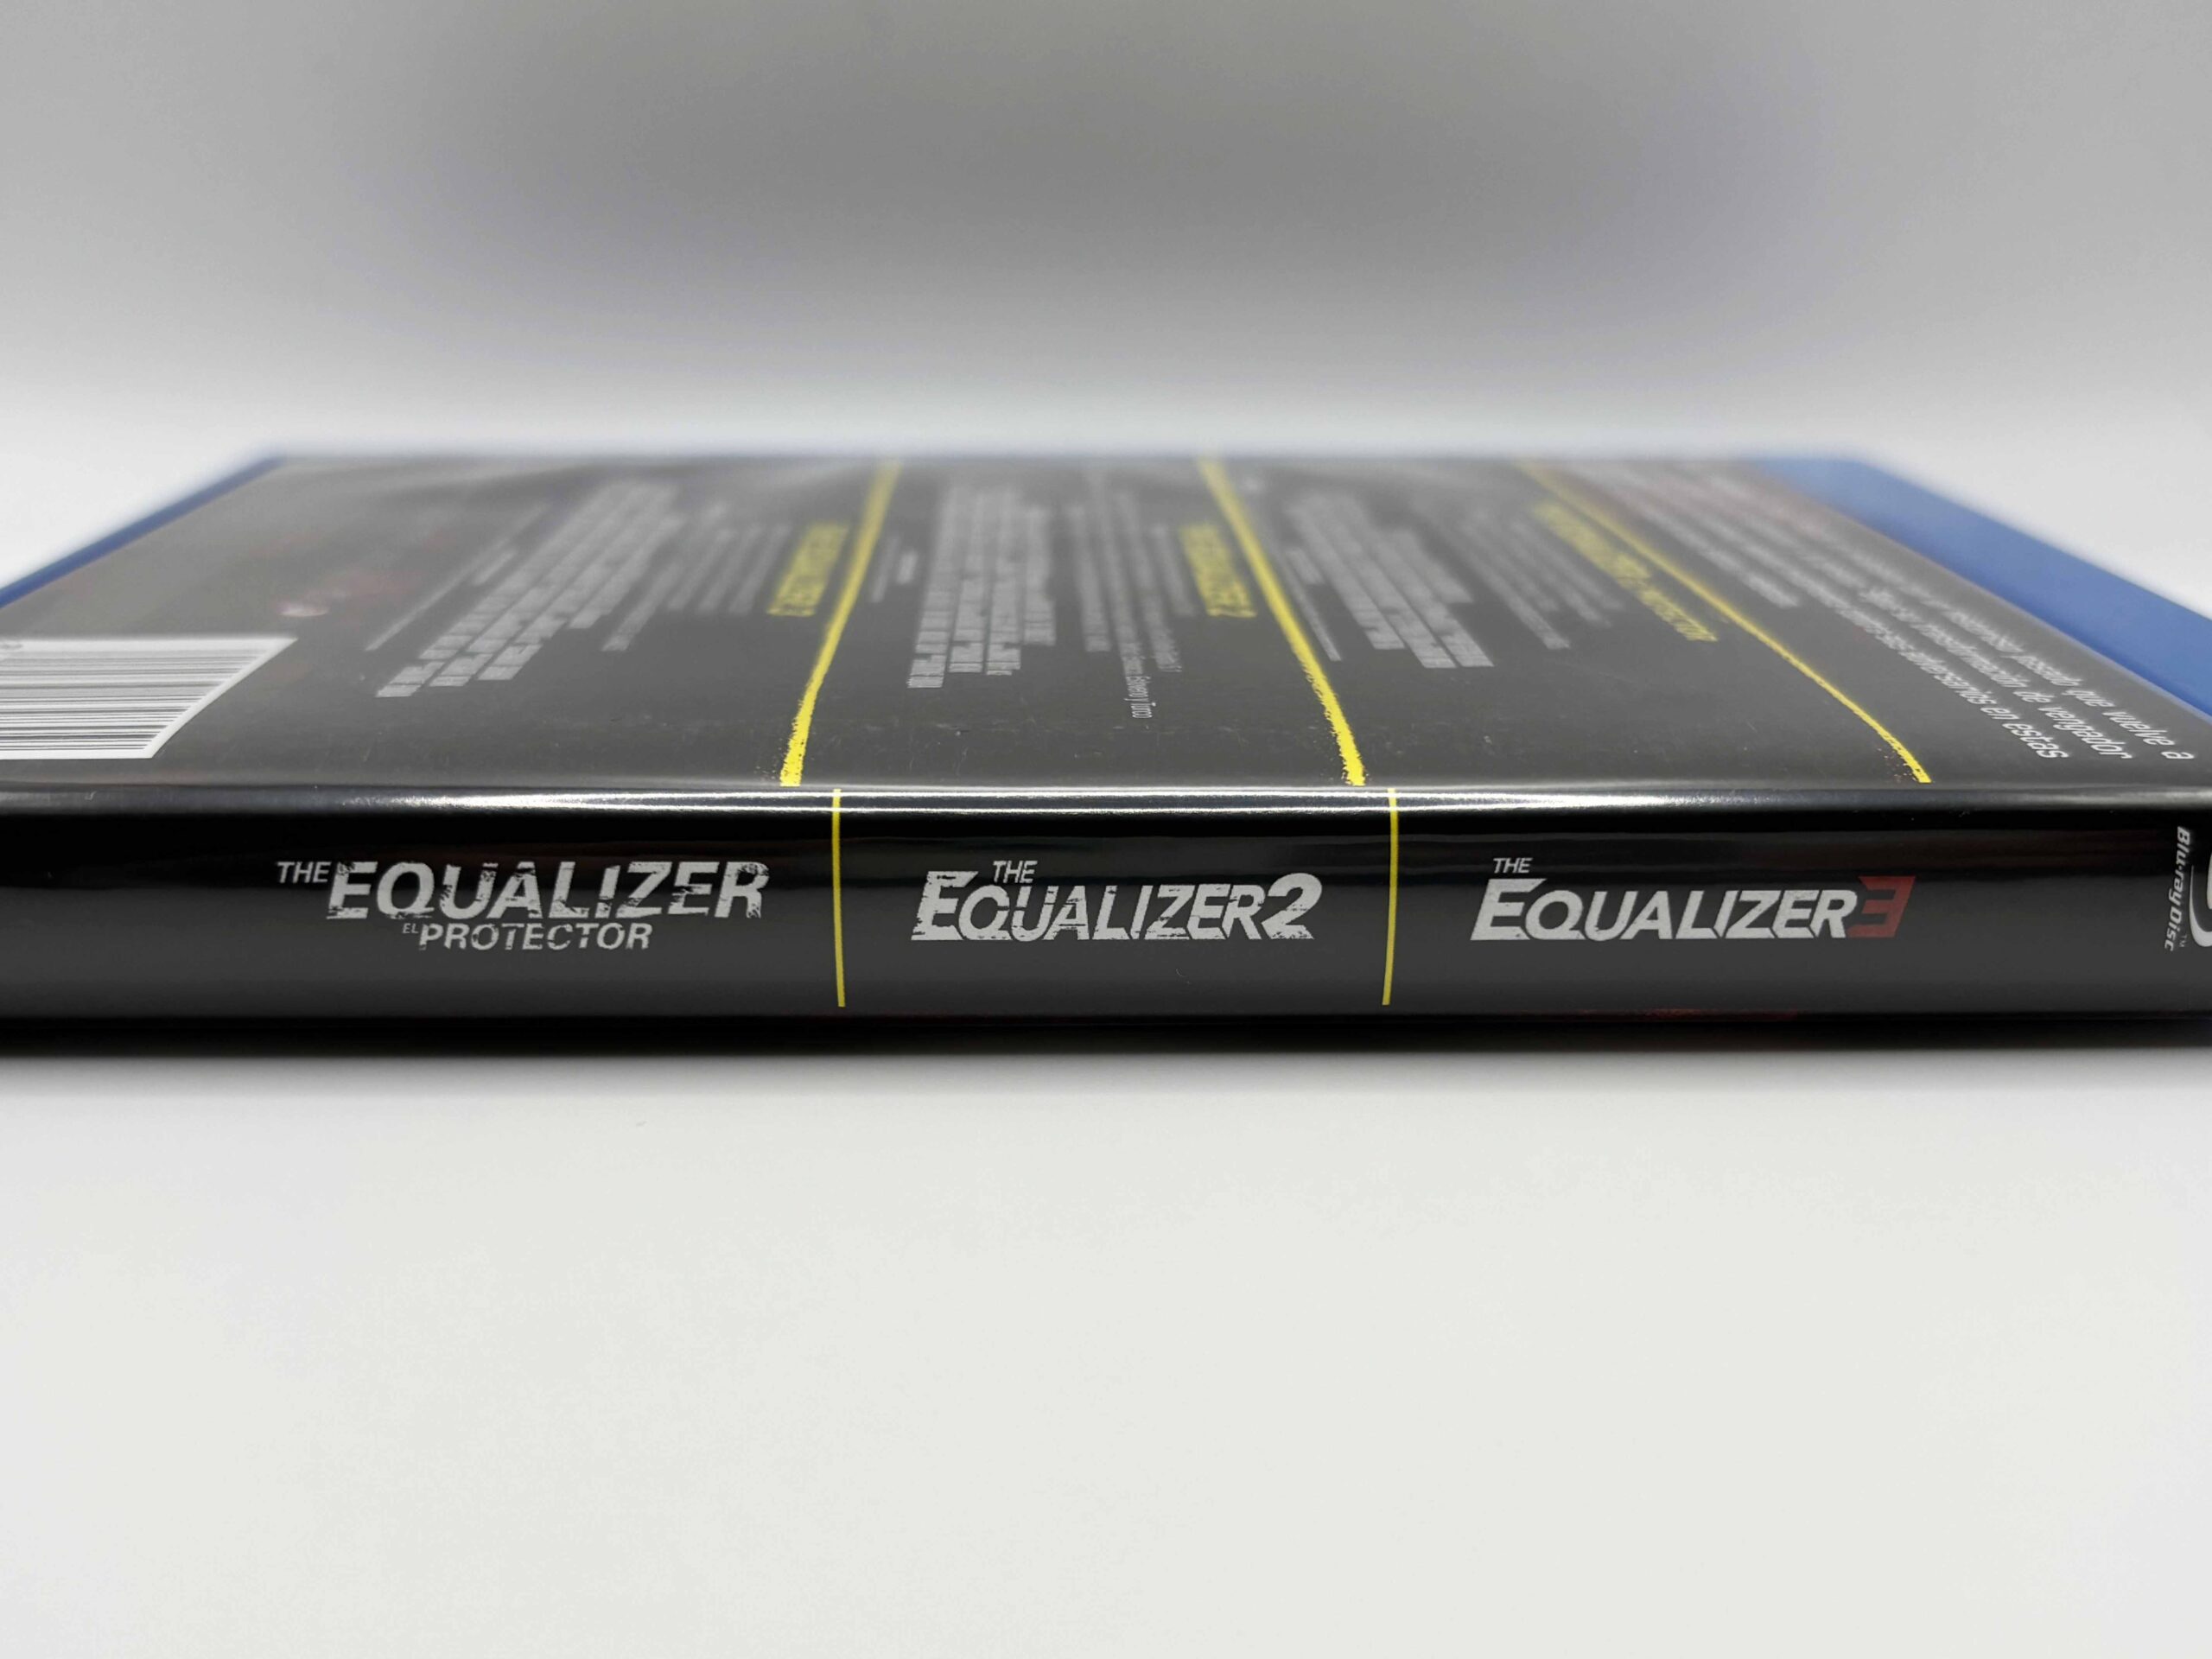 Análisis del Pack de 3 películas de ‘Equalizer’